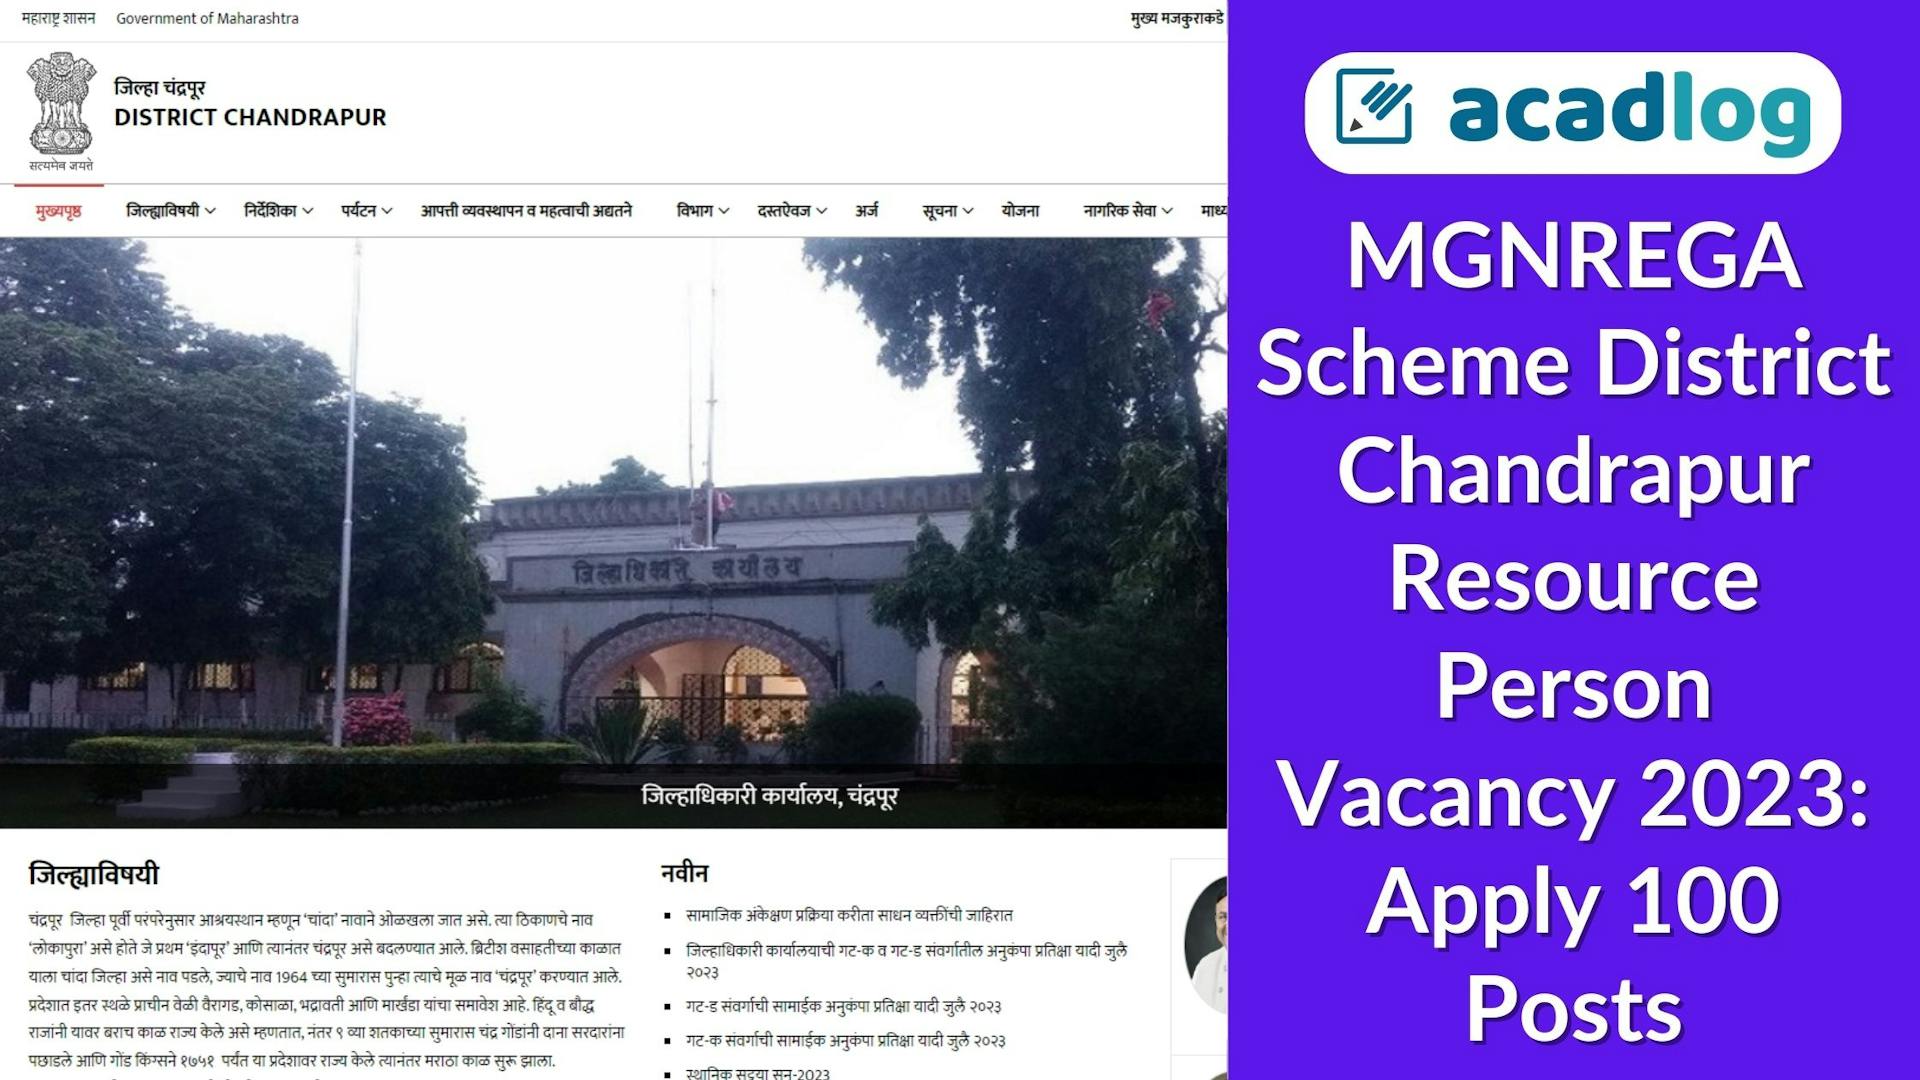 MGNREGA Scheme District Chandrapur Resource Person Vacancy 2023: Apply 100 Posts